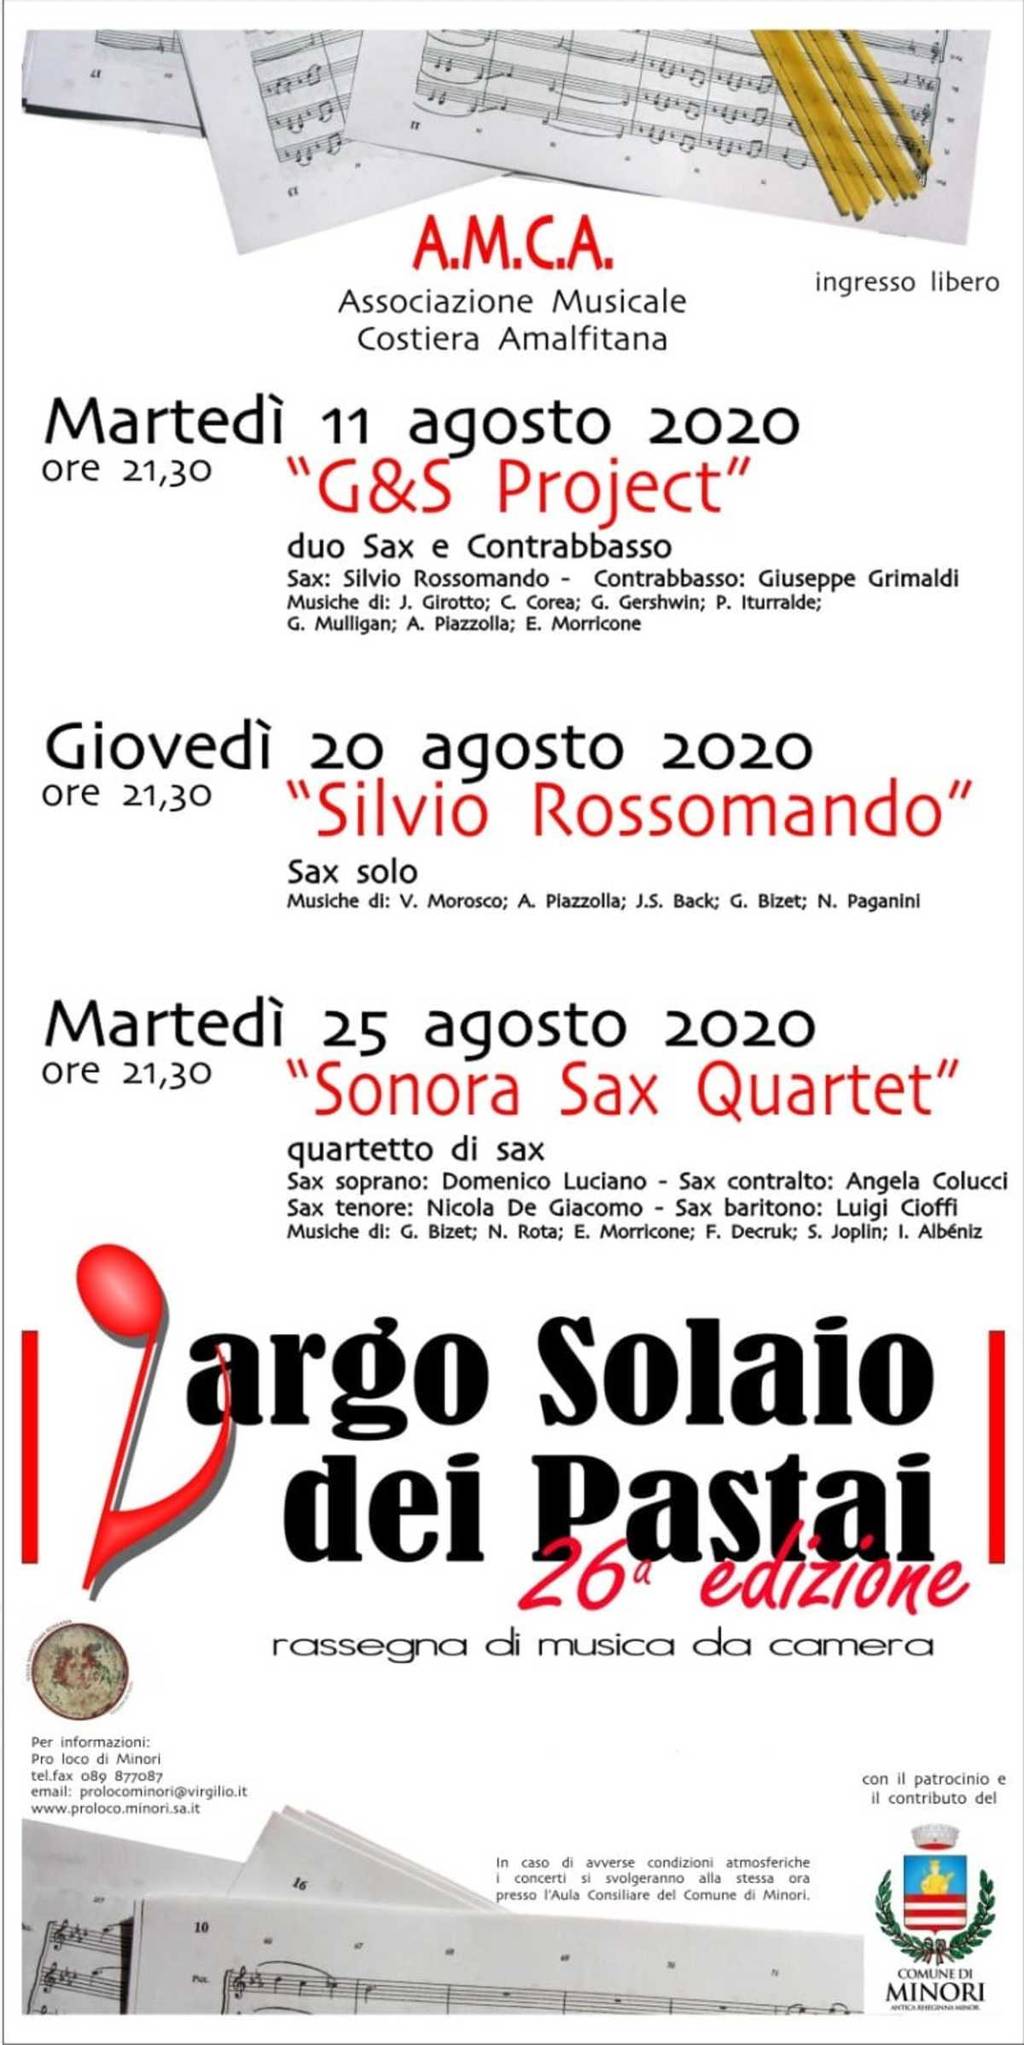 "Silvio Rossomando" Sax solo